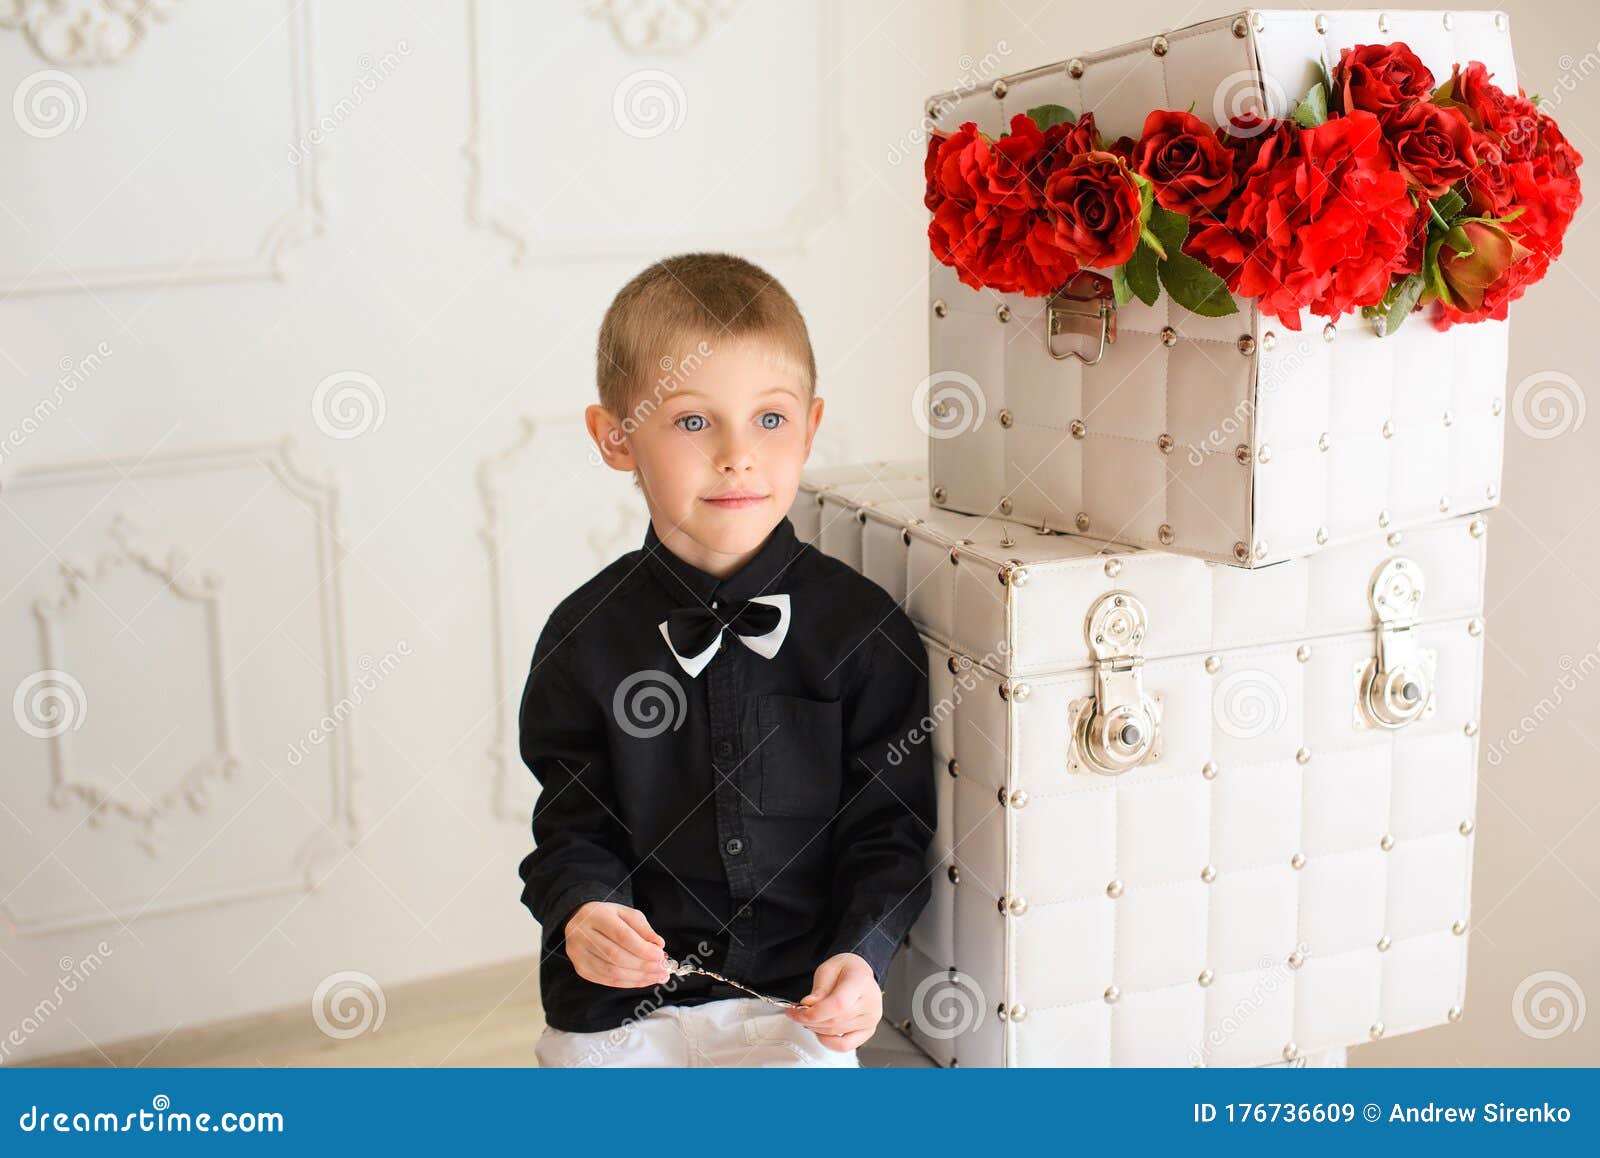 Niño De Camisa Negra Sentado De Cajas Con Rosas Rojas En La Habitación Con Interior Brillante Imagen de archivo - Imagen de oscuro, flor: 176736609